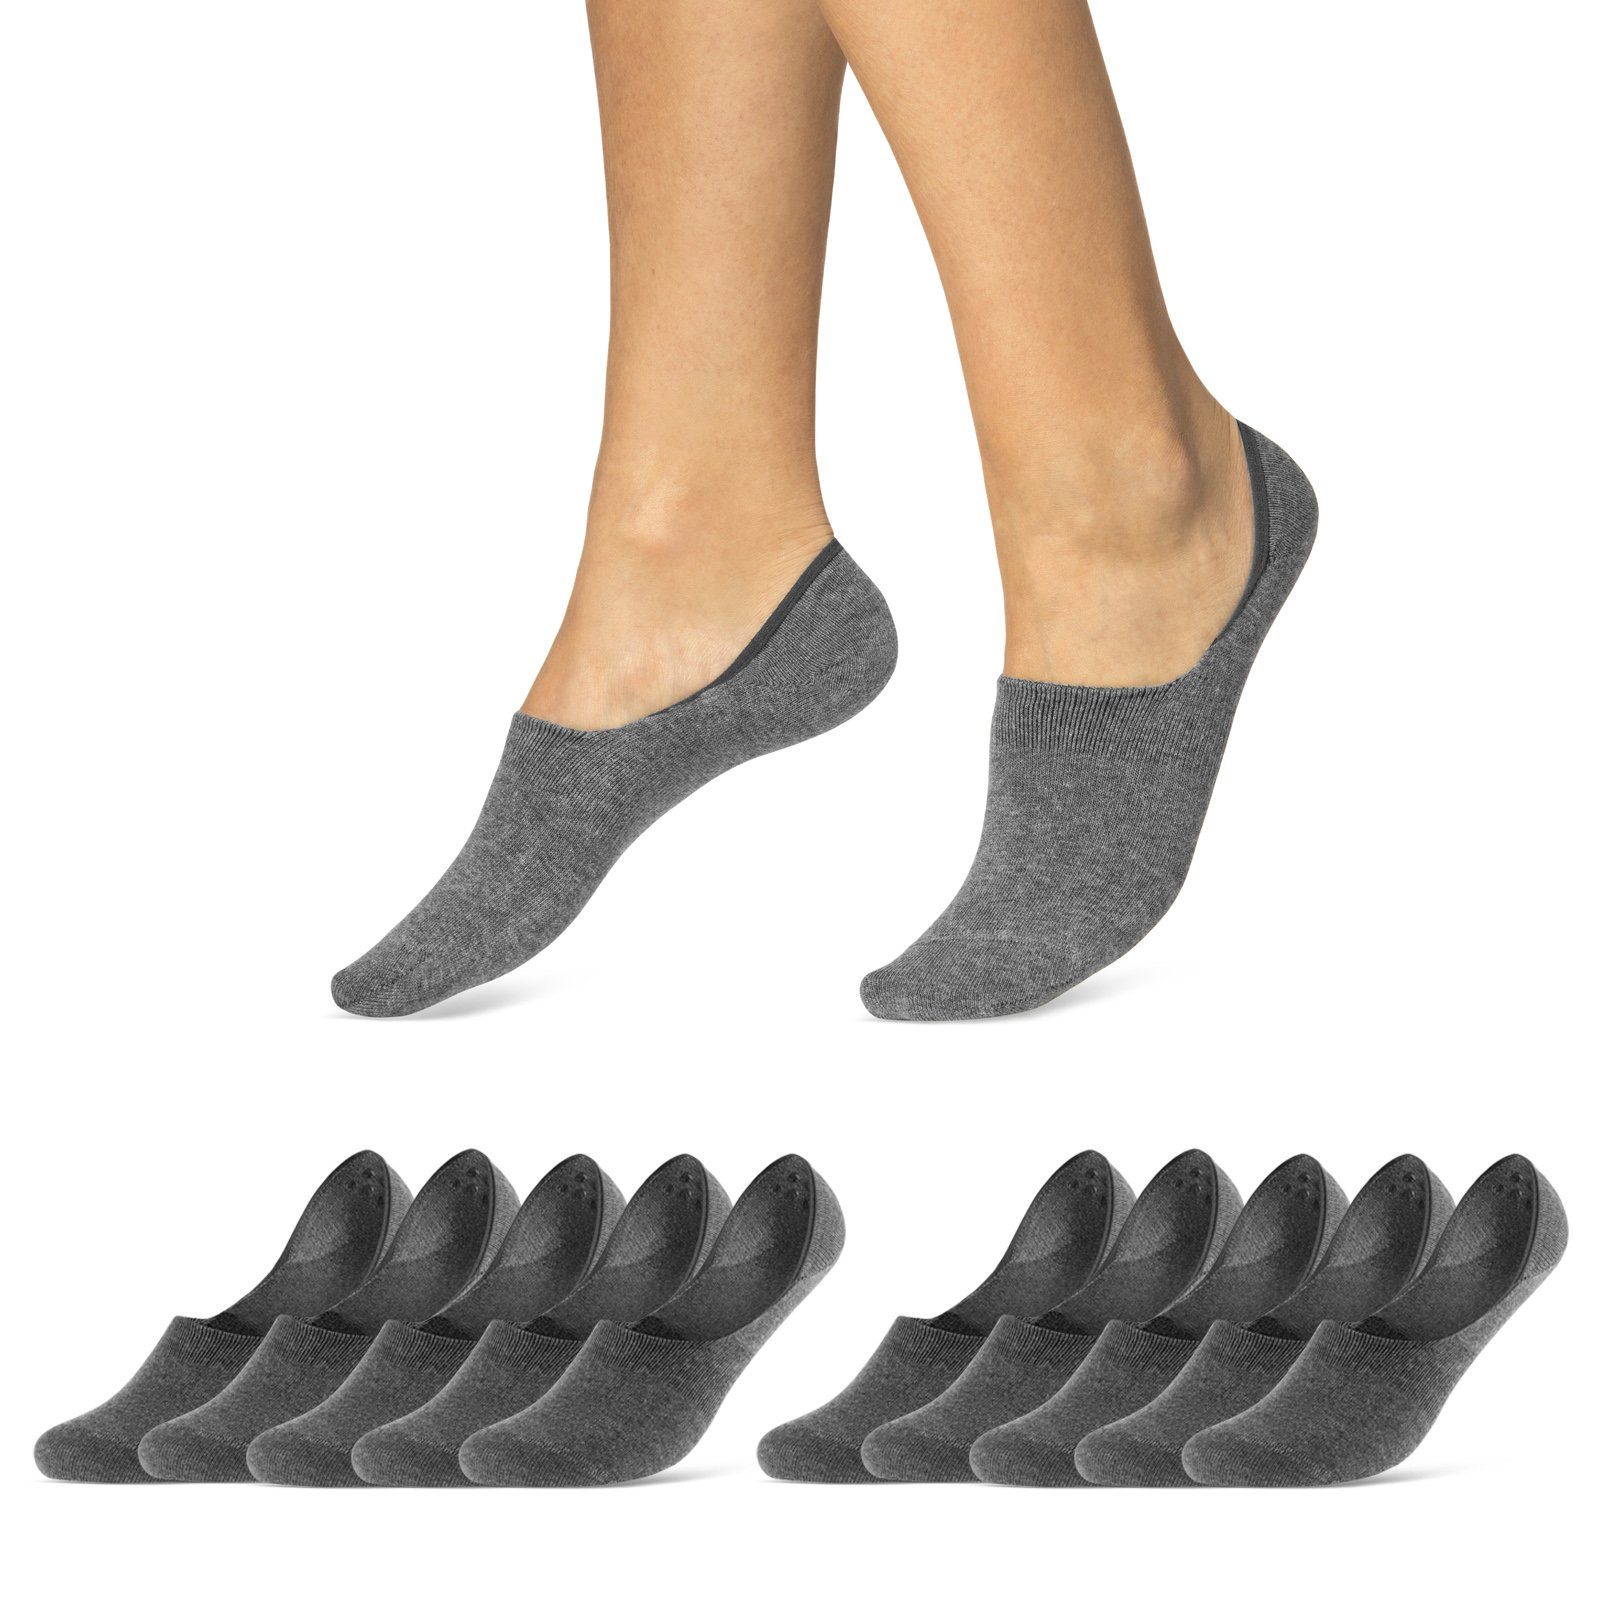 sockenkauf24 Füßlinge 10 Paar Premium Füßlinge aus gekämmter Baumwolle Damen & Herren (Grau, 47-50) Sneaker Socken ohne drückende Naht (Exclusive Line) - 70103T WP